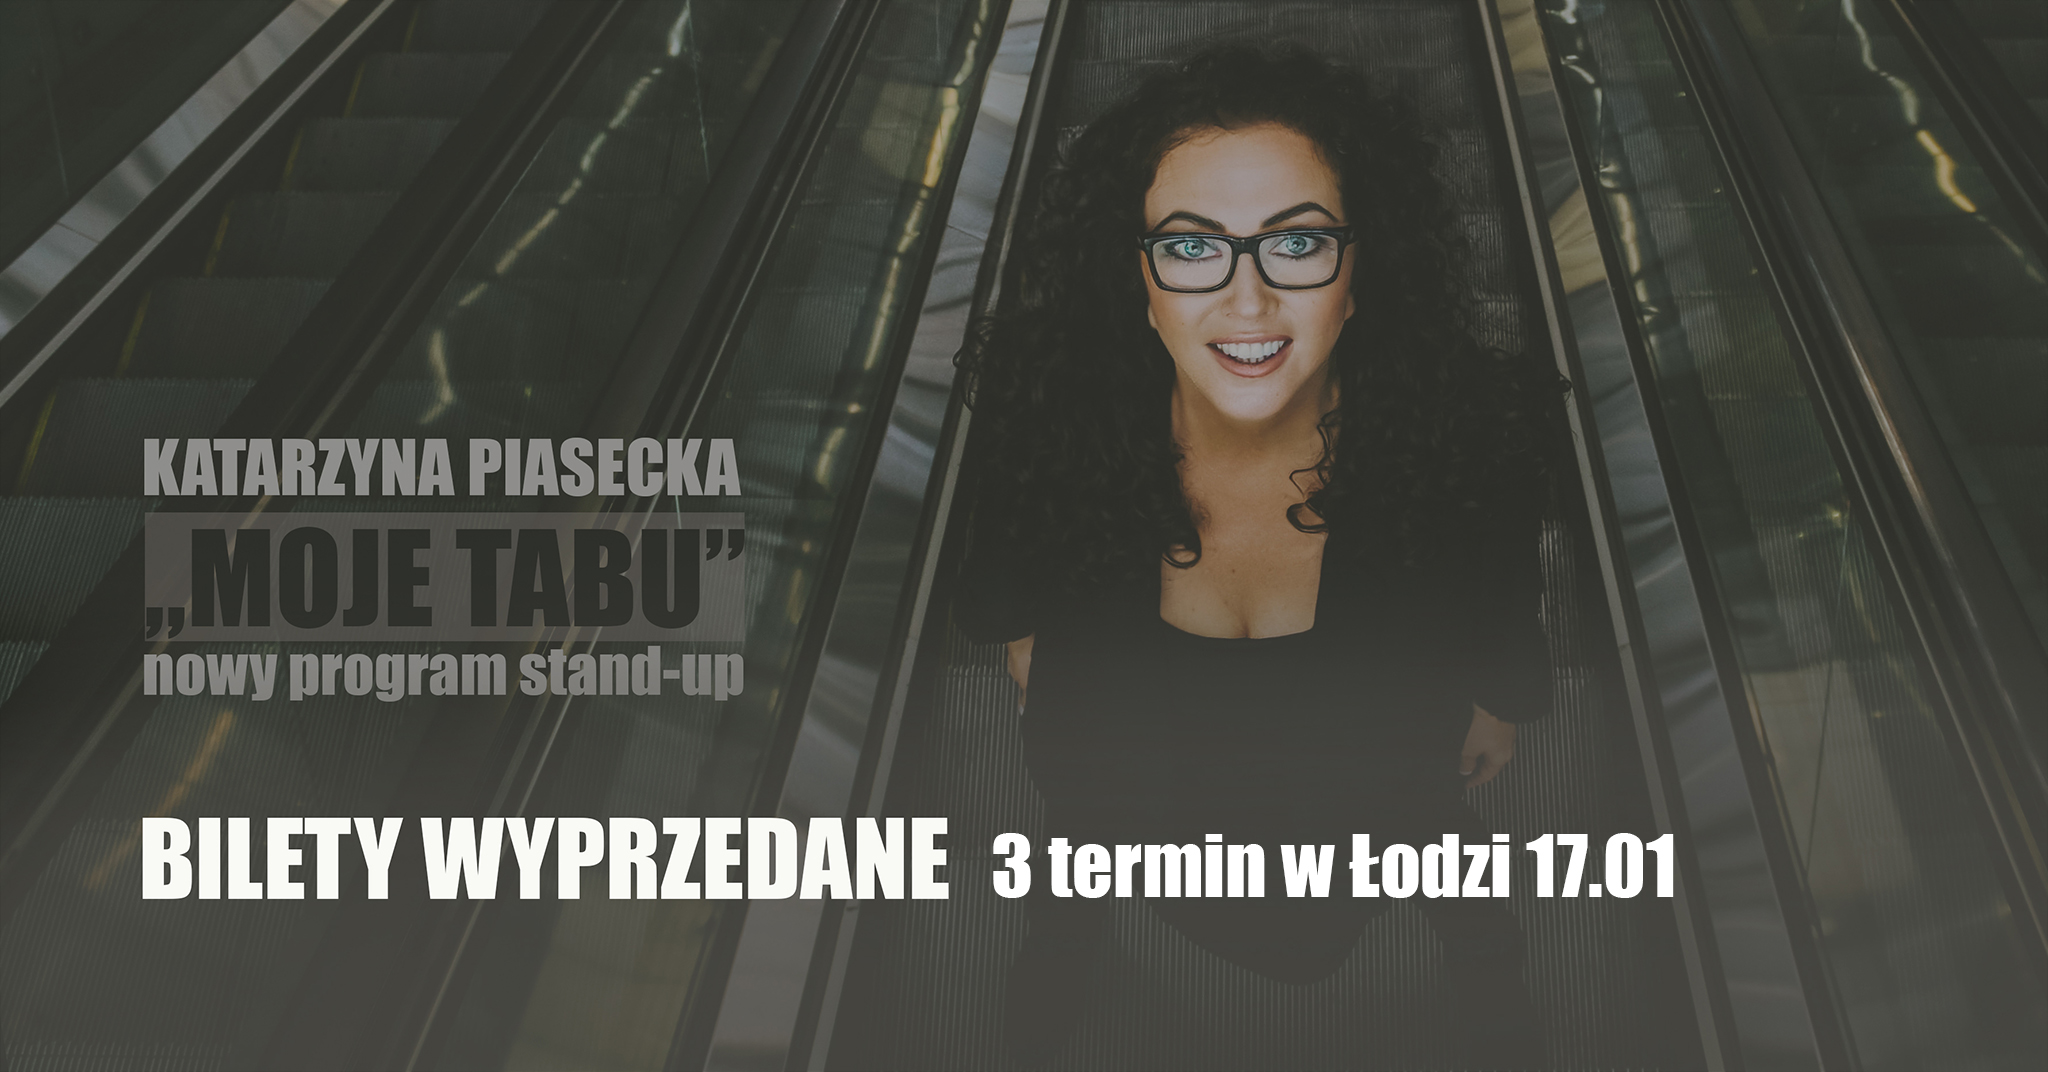 Wyprzedane | ŁÓDŹ 2 termin | Katarzyna Piasecka – program stand-up „Moje tabu”